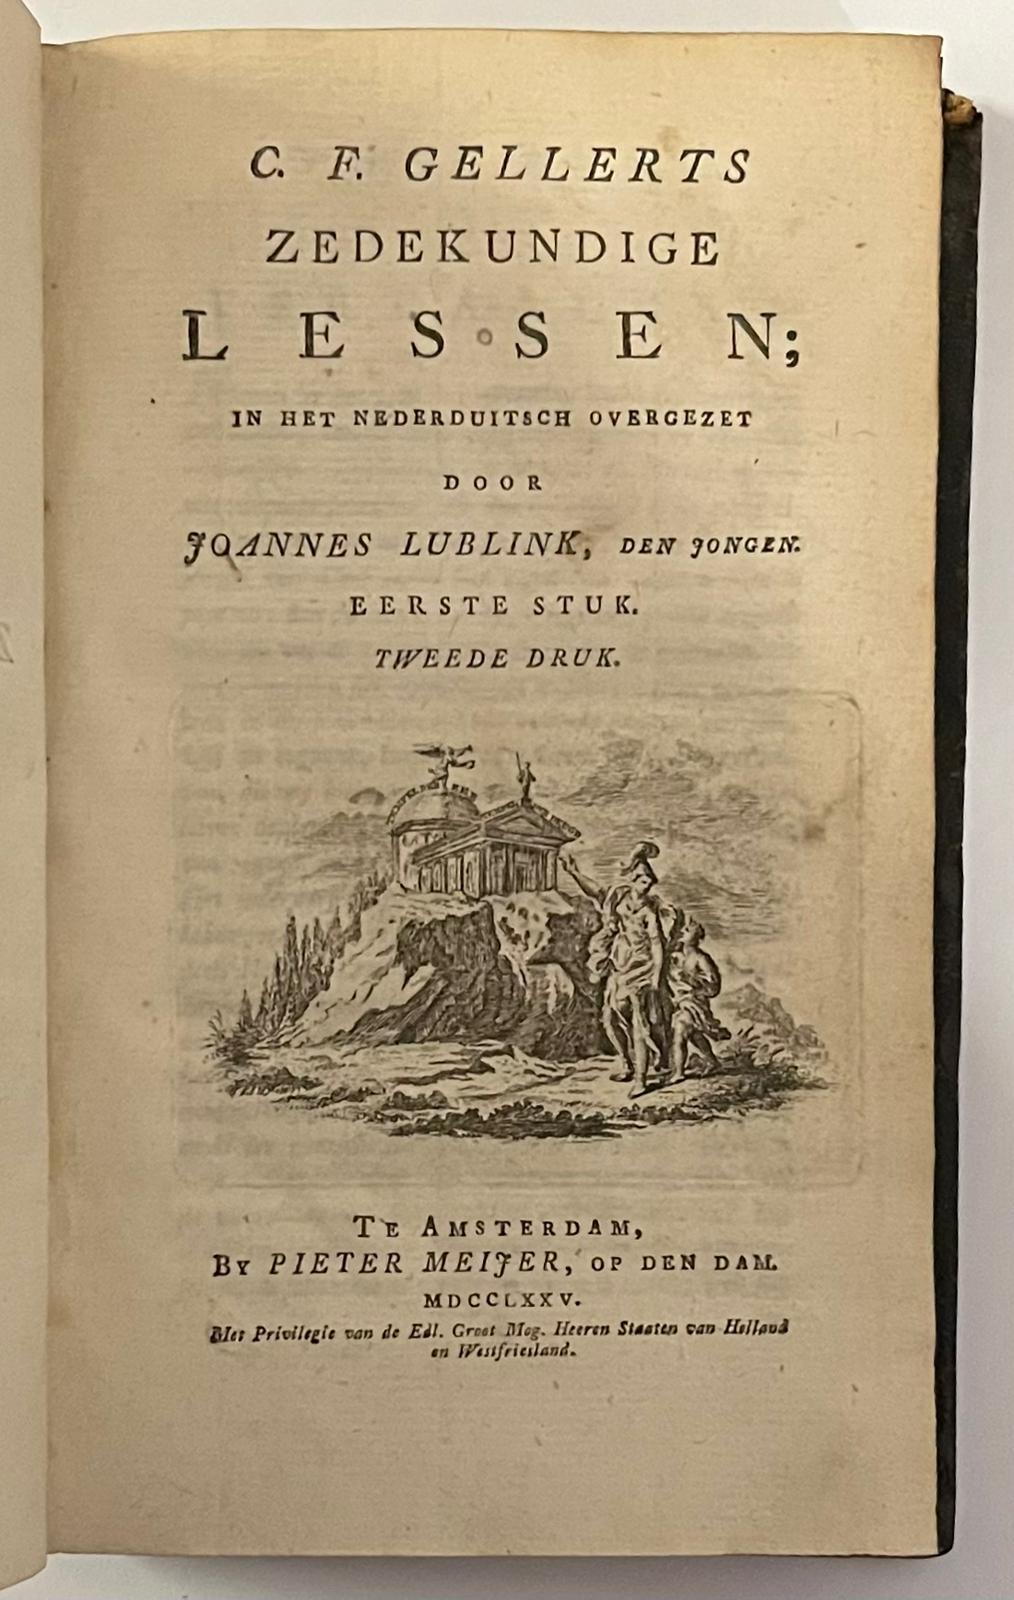 Two volumes, 1775, Translation | Zedekundige lessen, in het Nederduitsch overgezet door J. Lublink den jongen. 2 stukken, 2e druk, Amsterdam, P. Meijer, 1775, 2 vols.